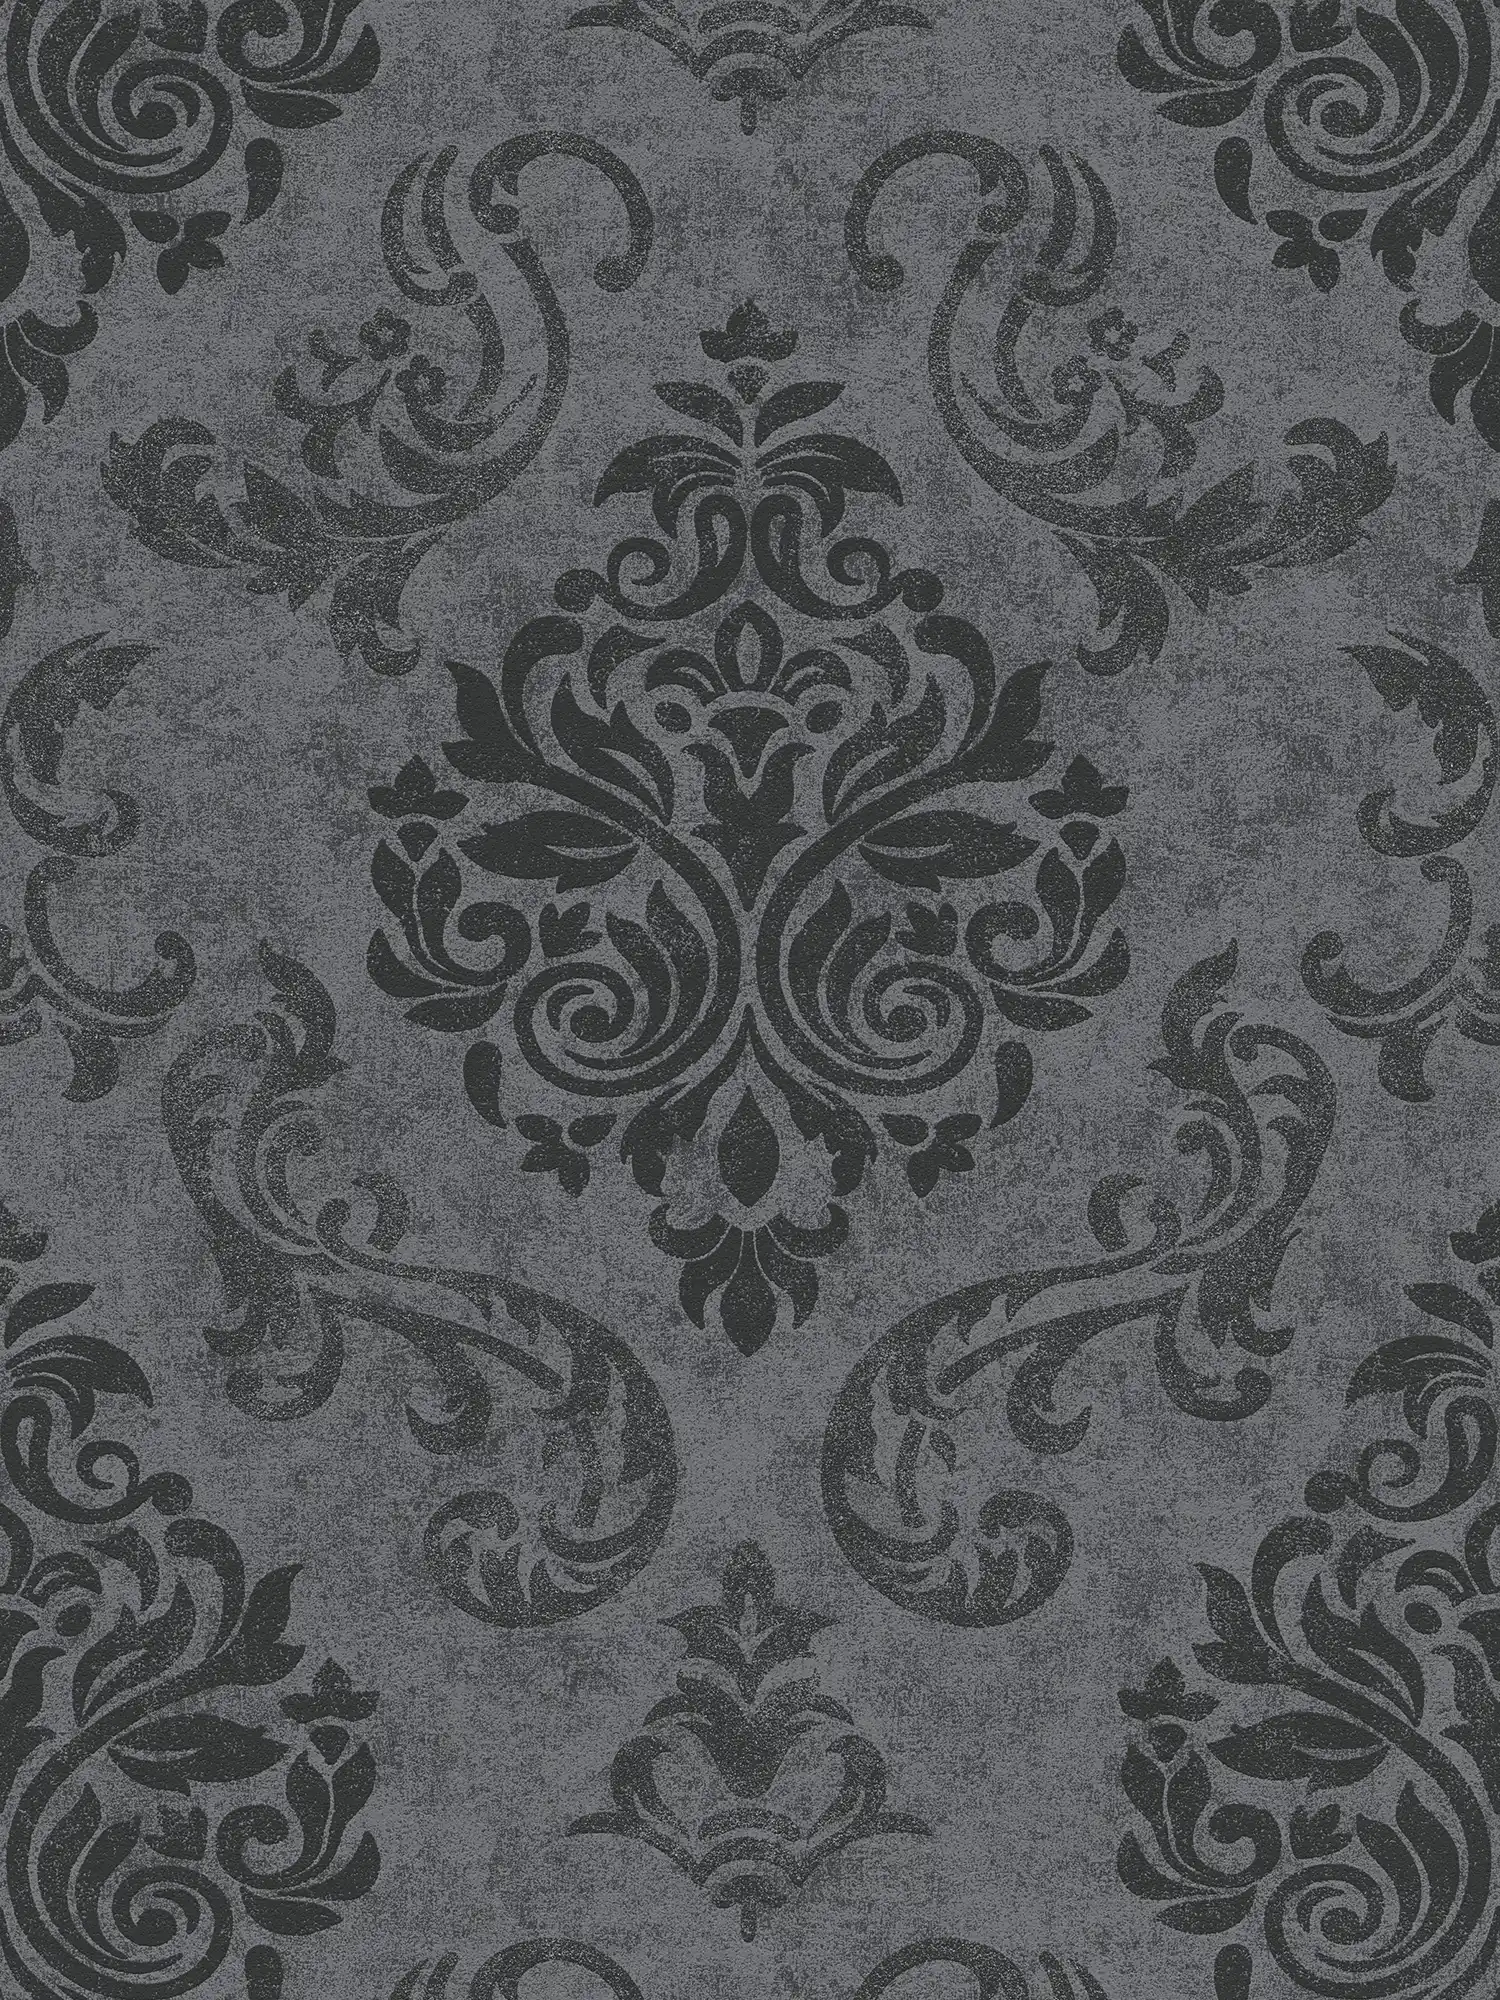 Carta da parati ornamentale in stile barocco con effetto glitter - grigio, metallizzato, nero
